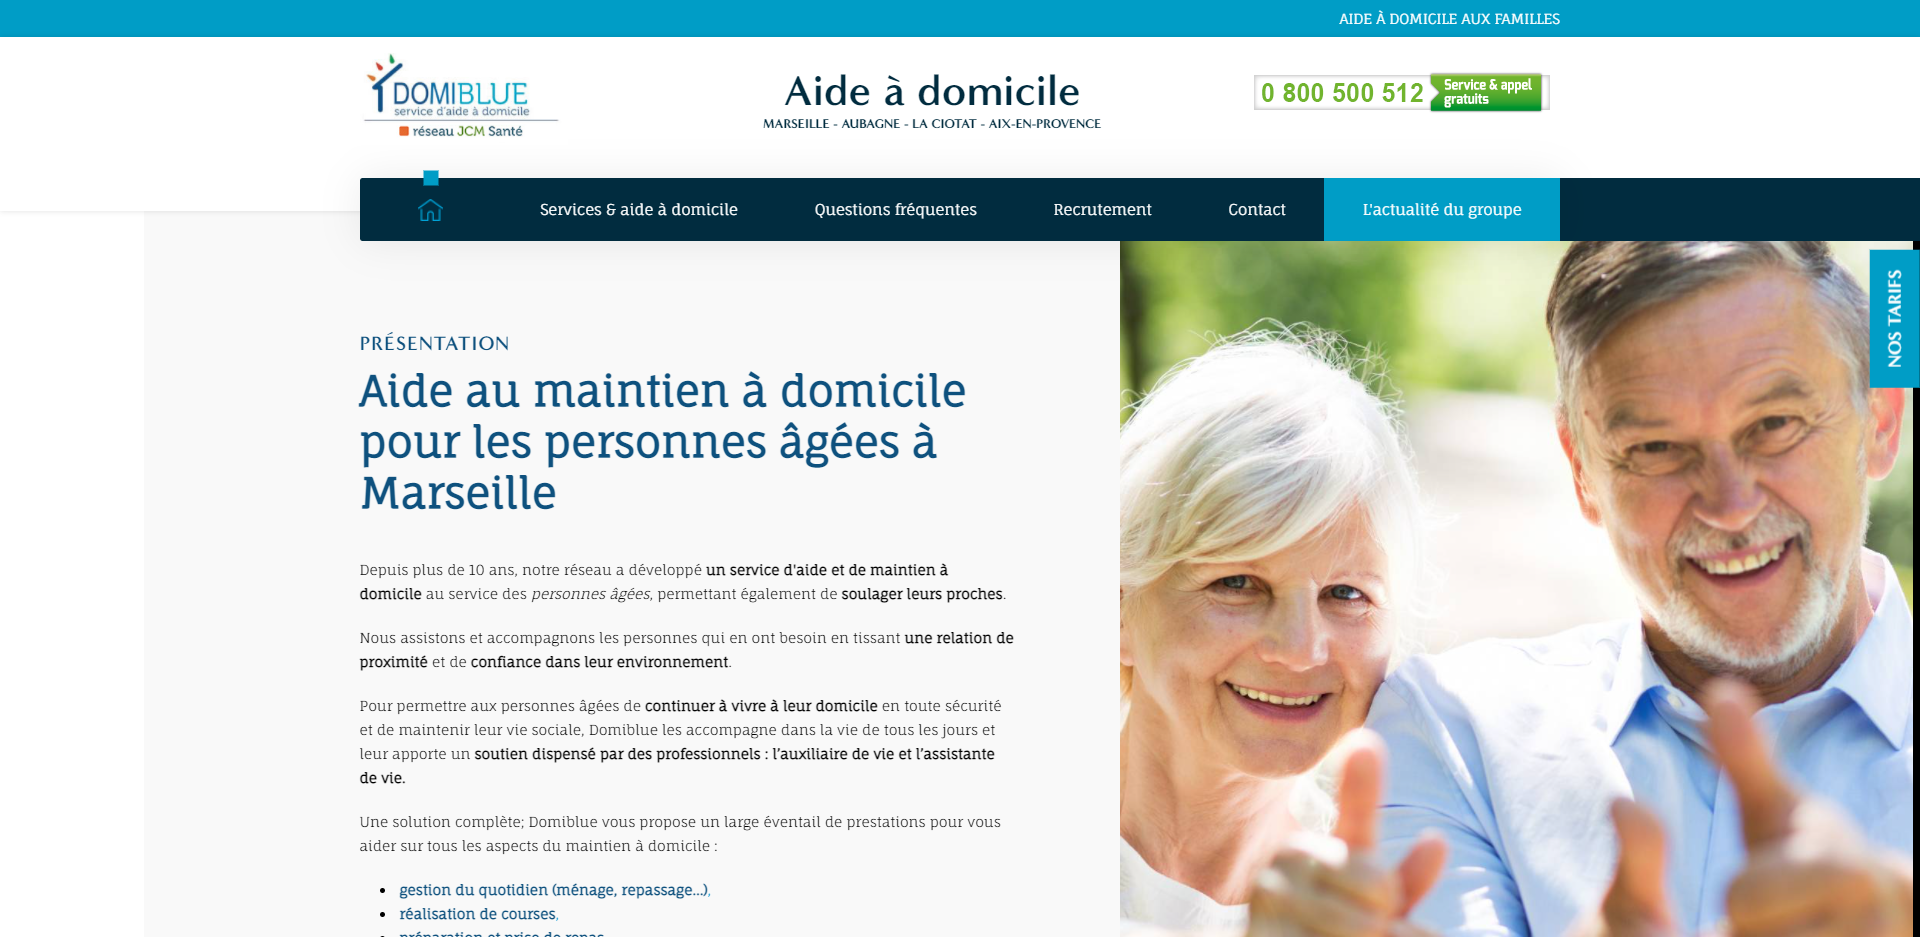 Quelle entreprise pour des soins à domicile pour personnes âgées à Marseille ? - Domiblue